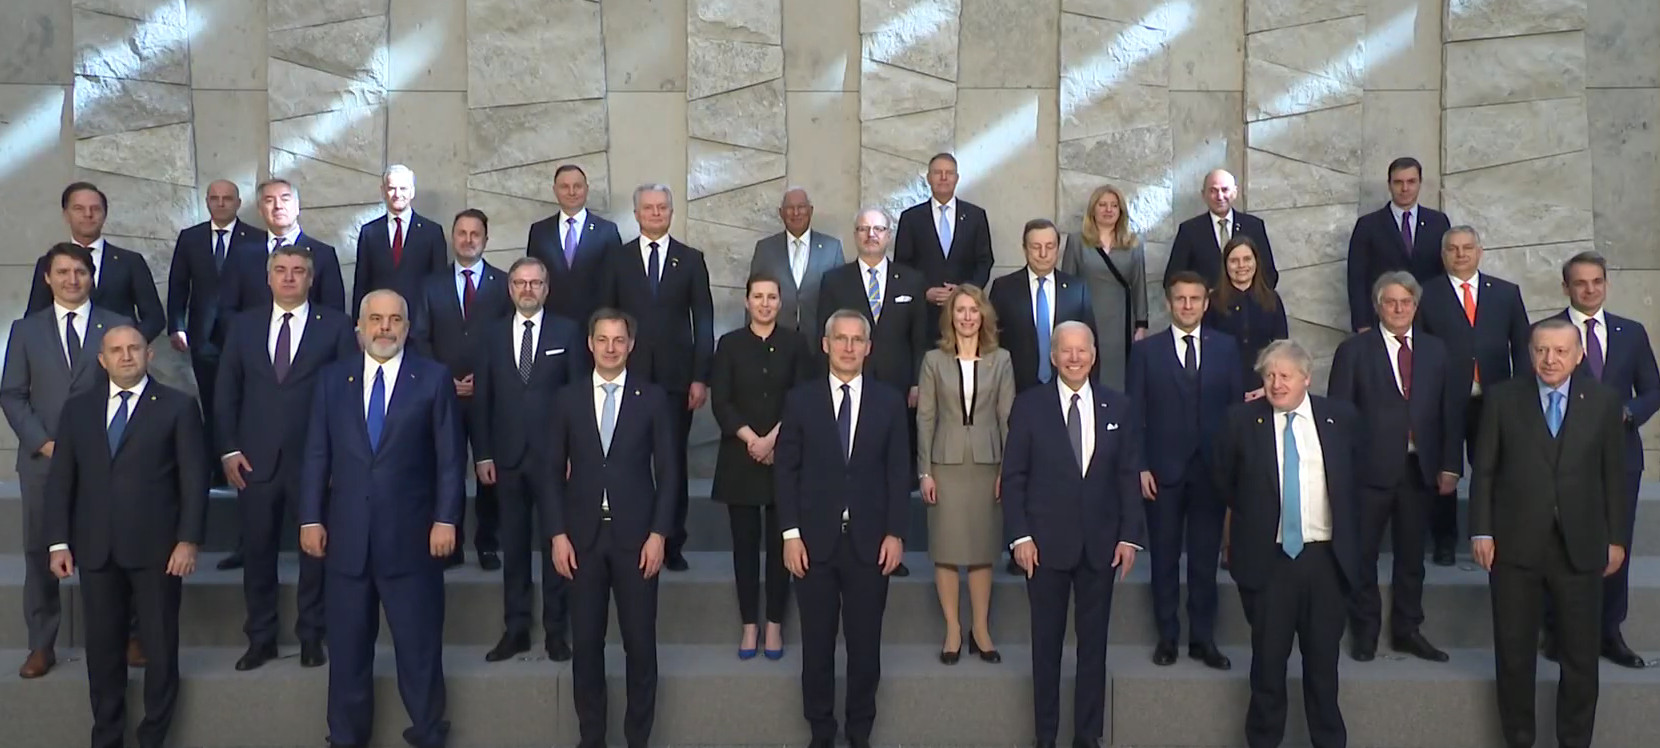 NI SRAMA, NI OBRAZA Na godišnjicu NATO agresije, Đukanović prisustvuje samitu ove alijanse!